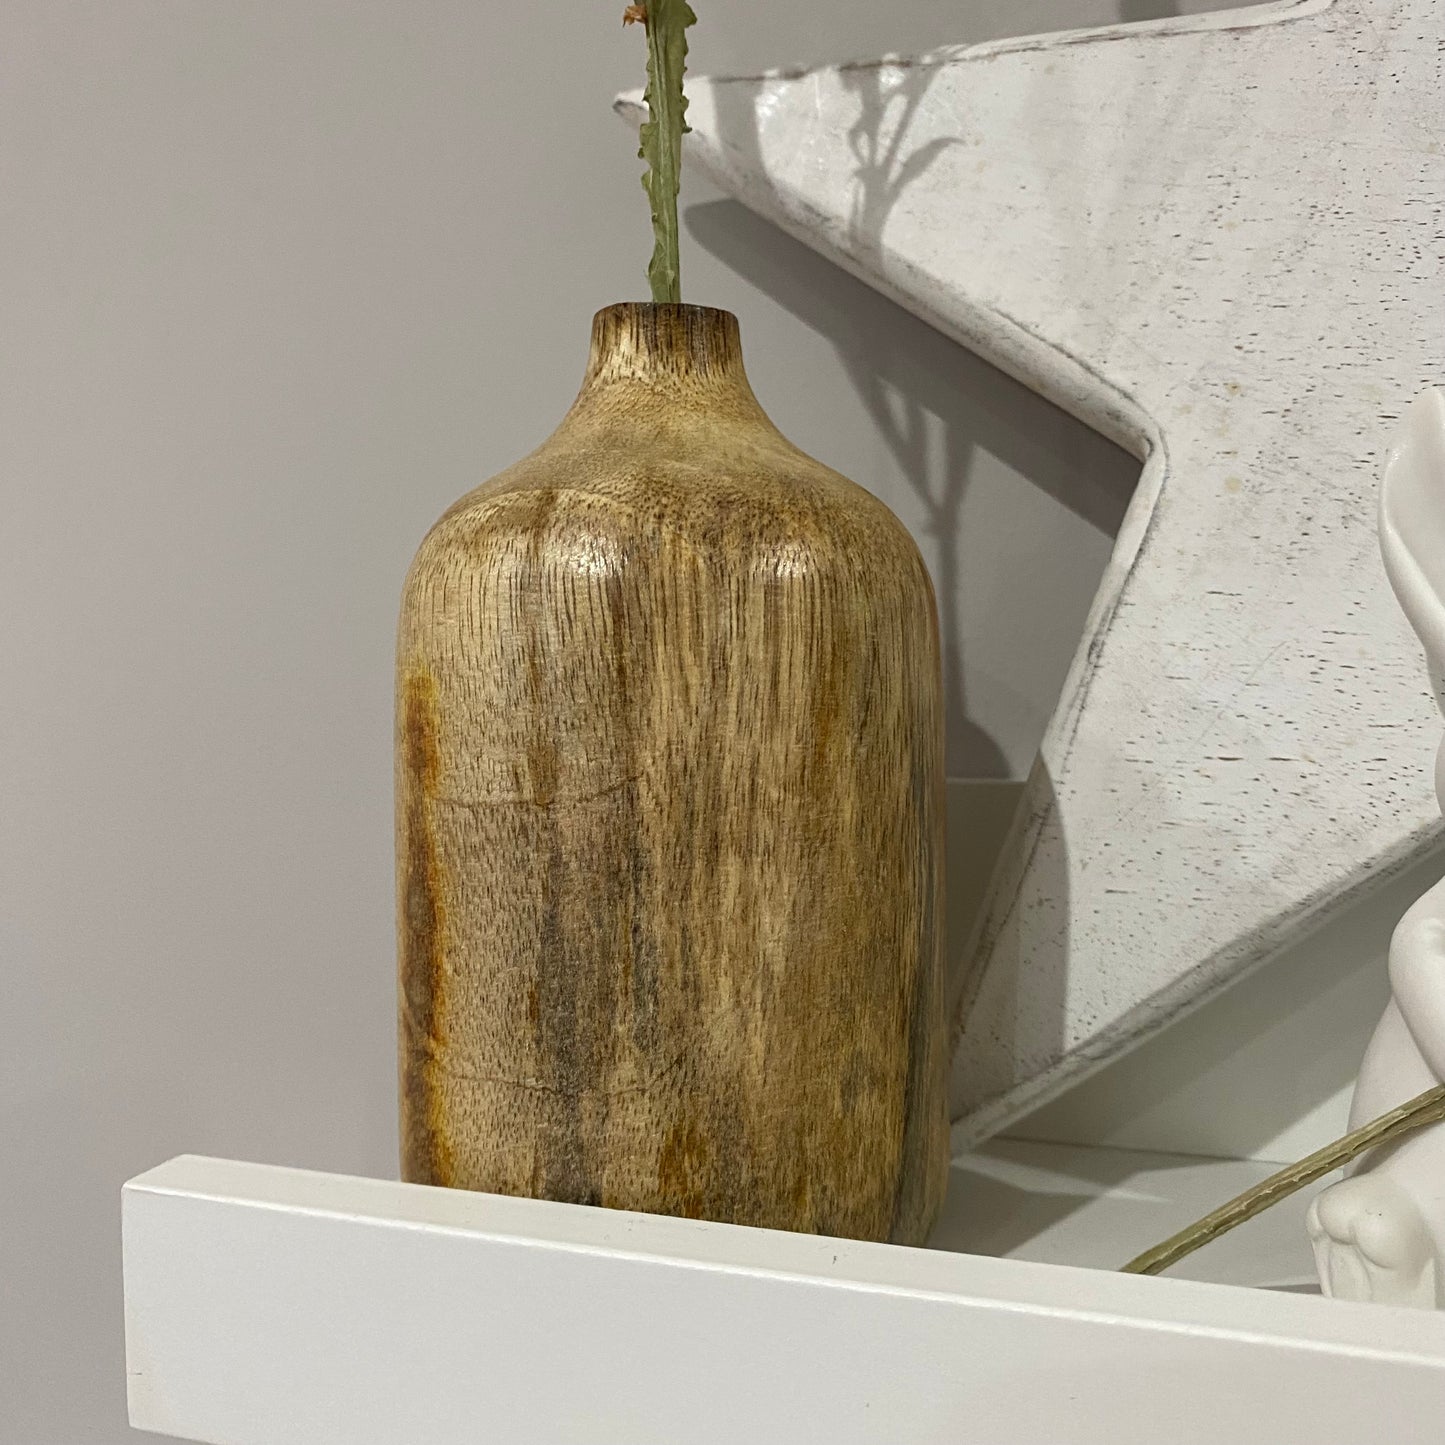 Mango Wood Vase with Narrow Neck